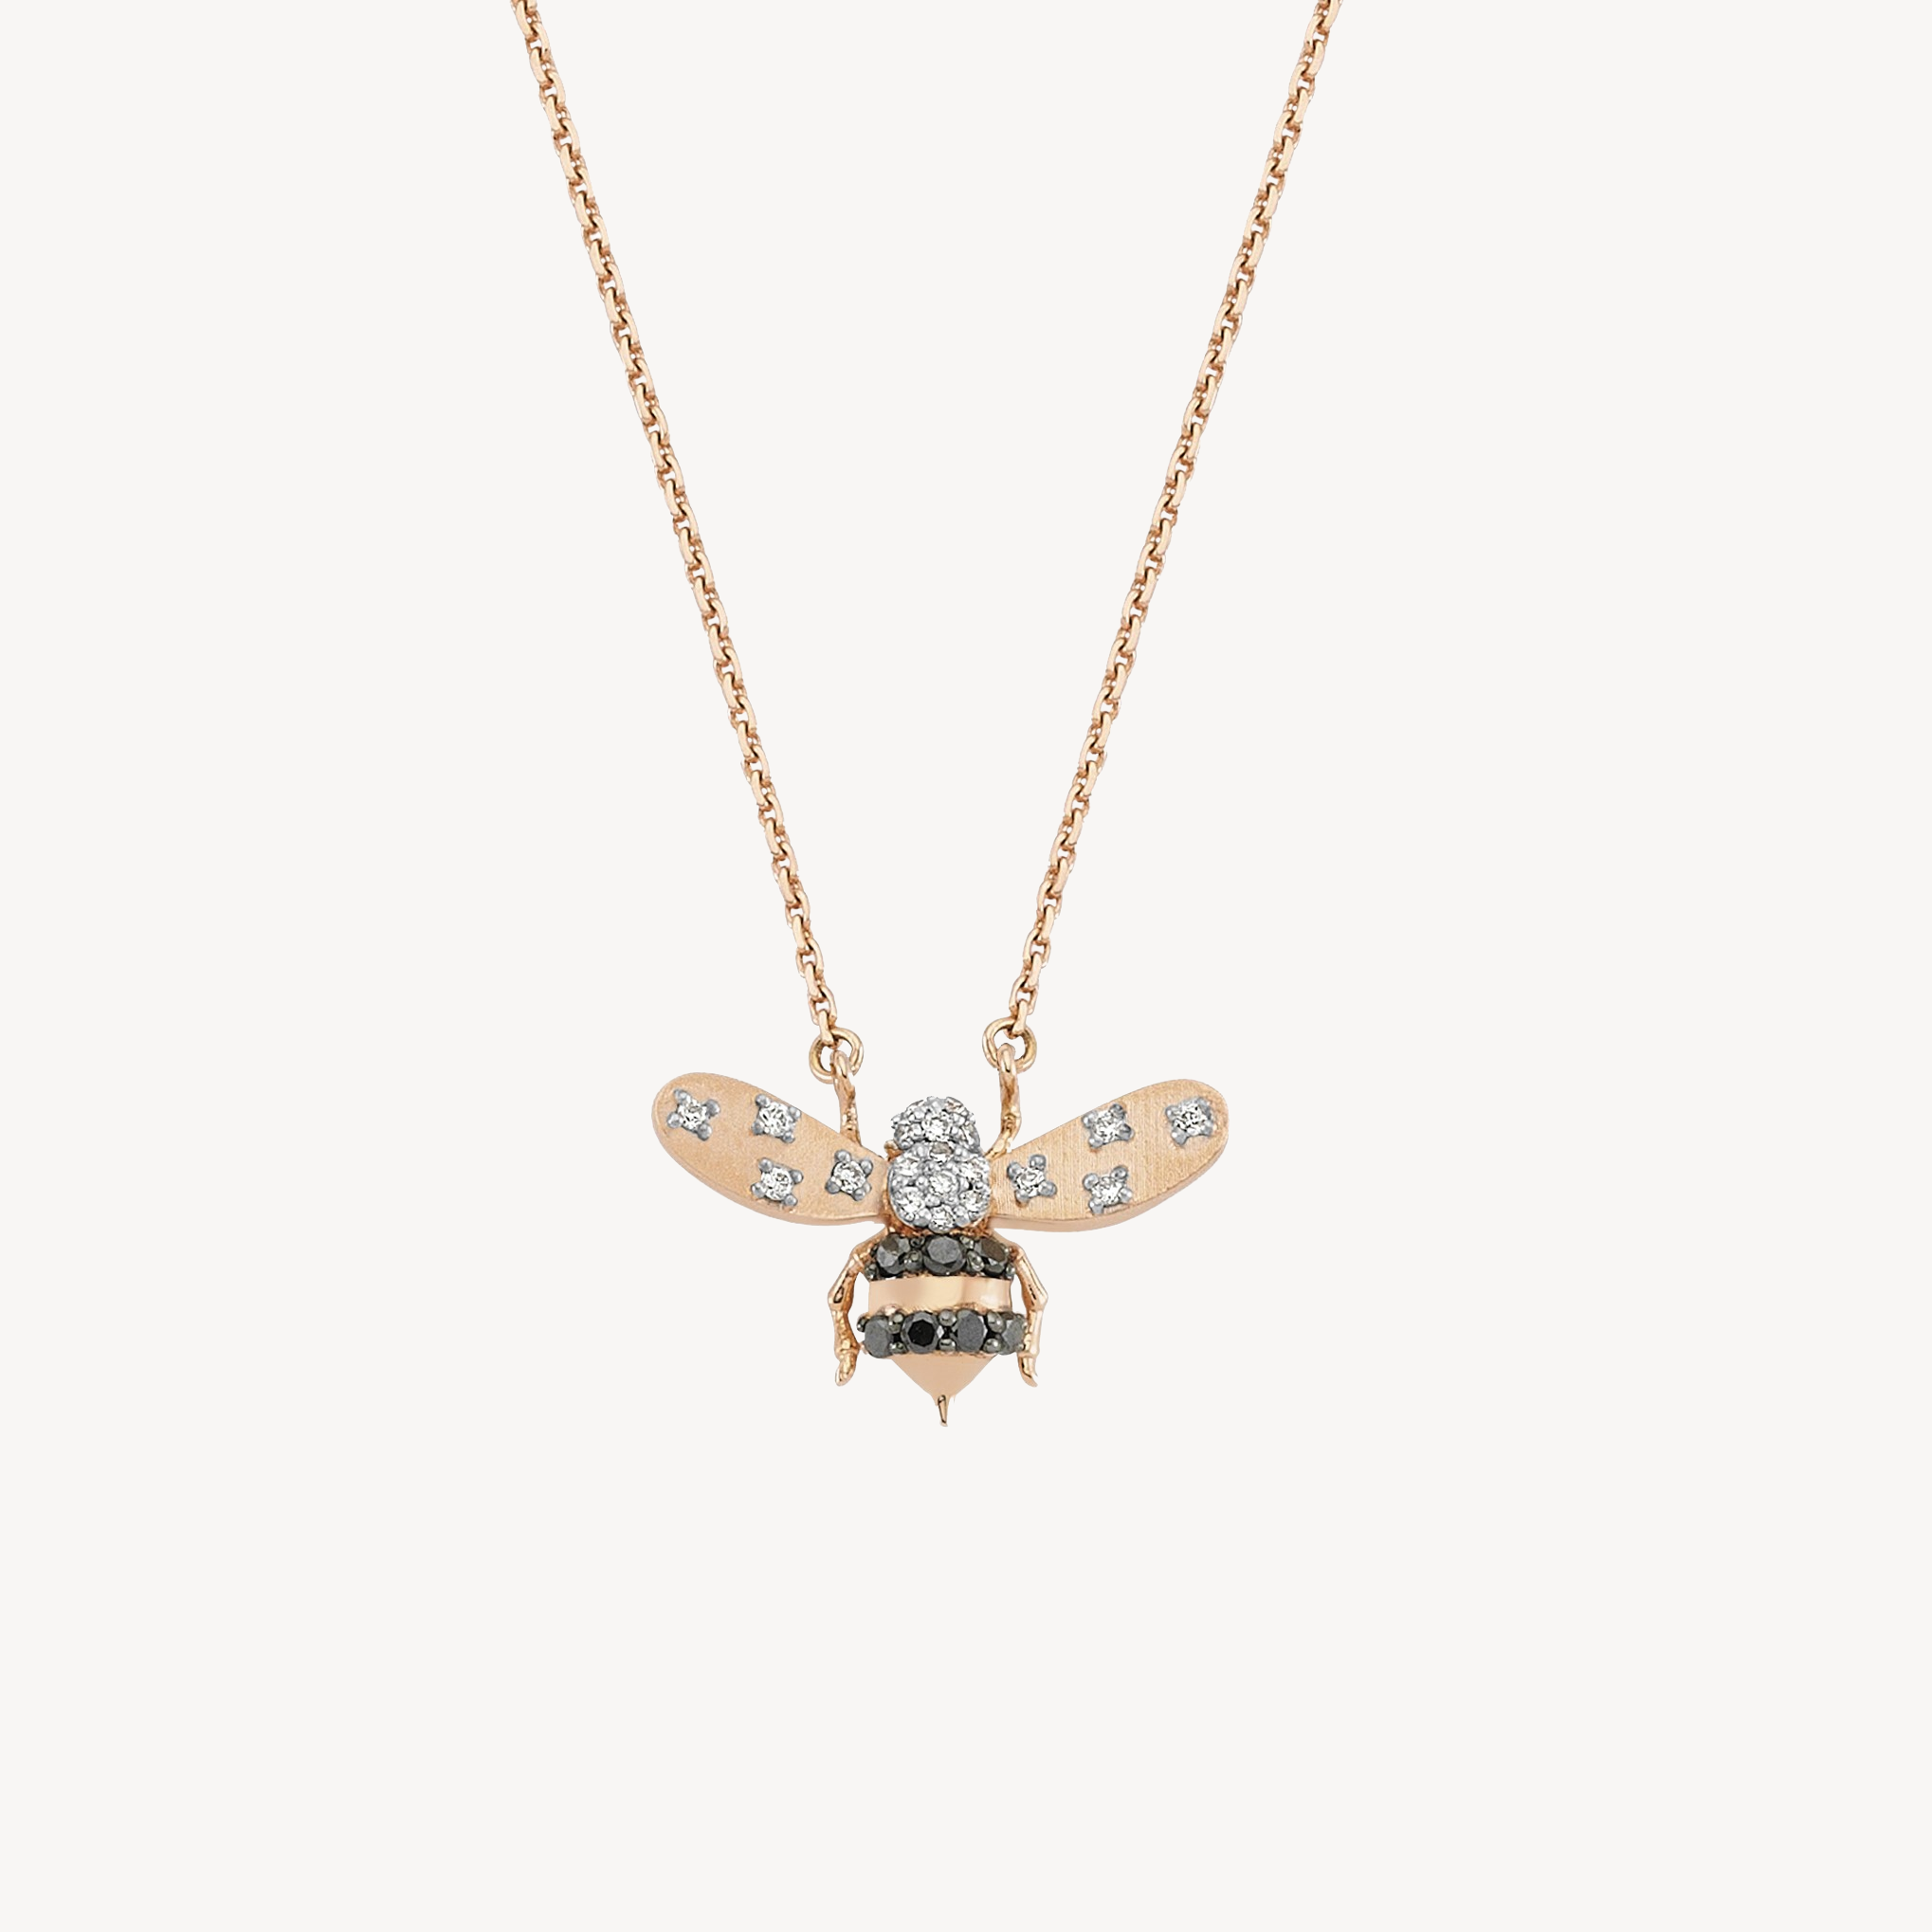 Honey Bee Necklace Black & White Diamond